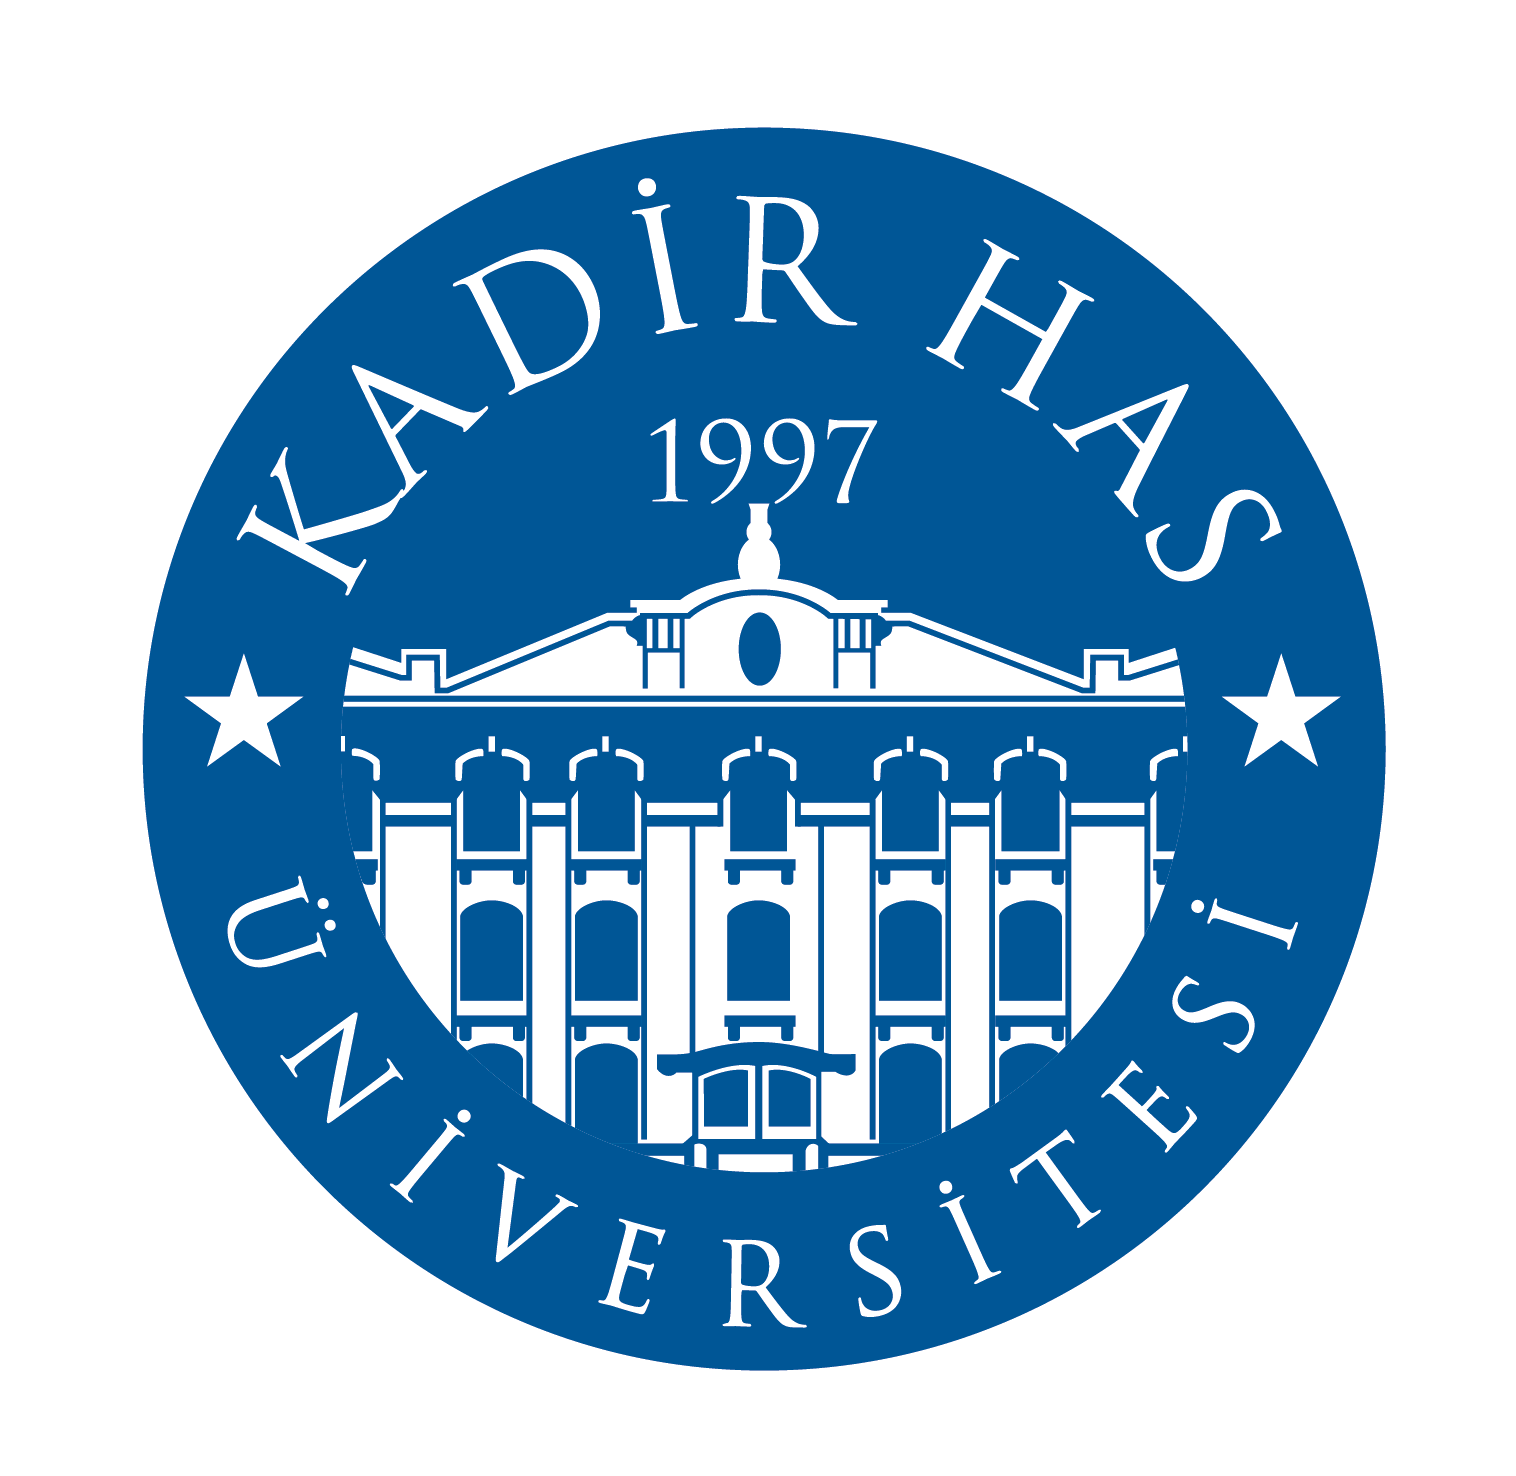 Programme de doctorat pour étudiants internationaux à l’Université Kadir Has, Turquie 2021